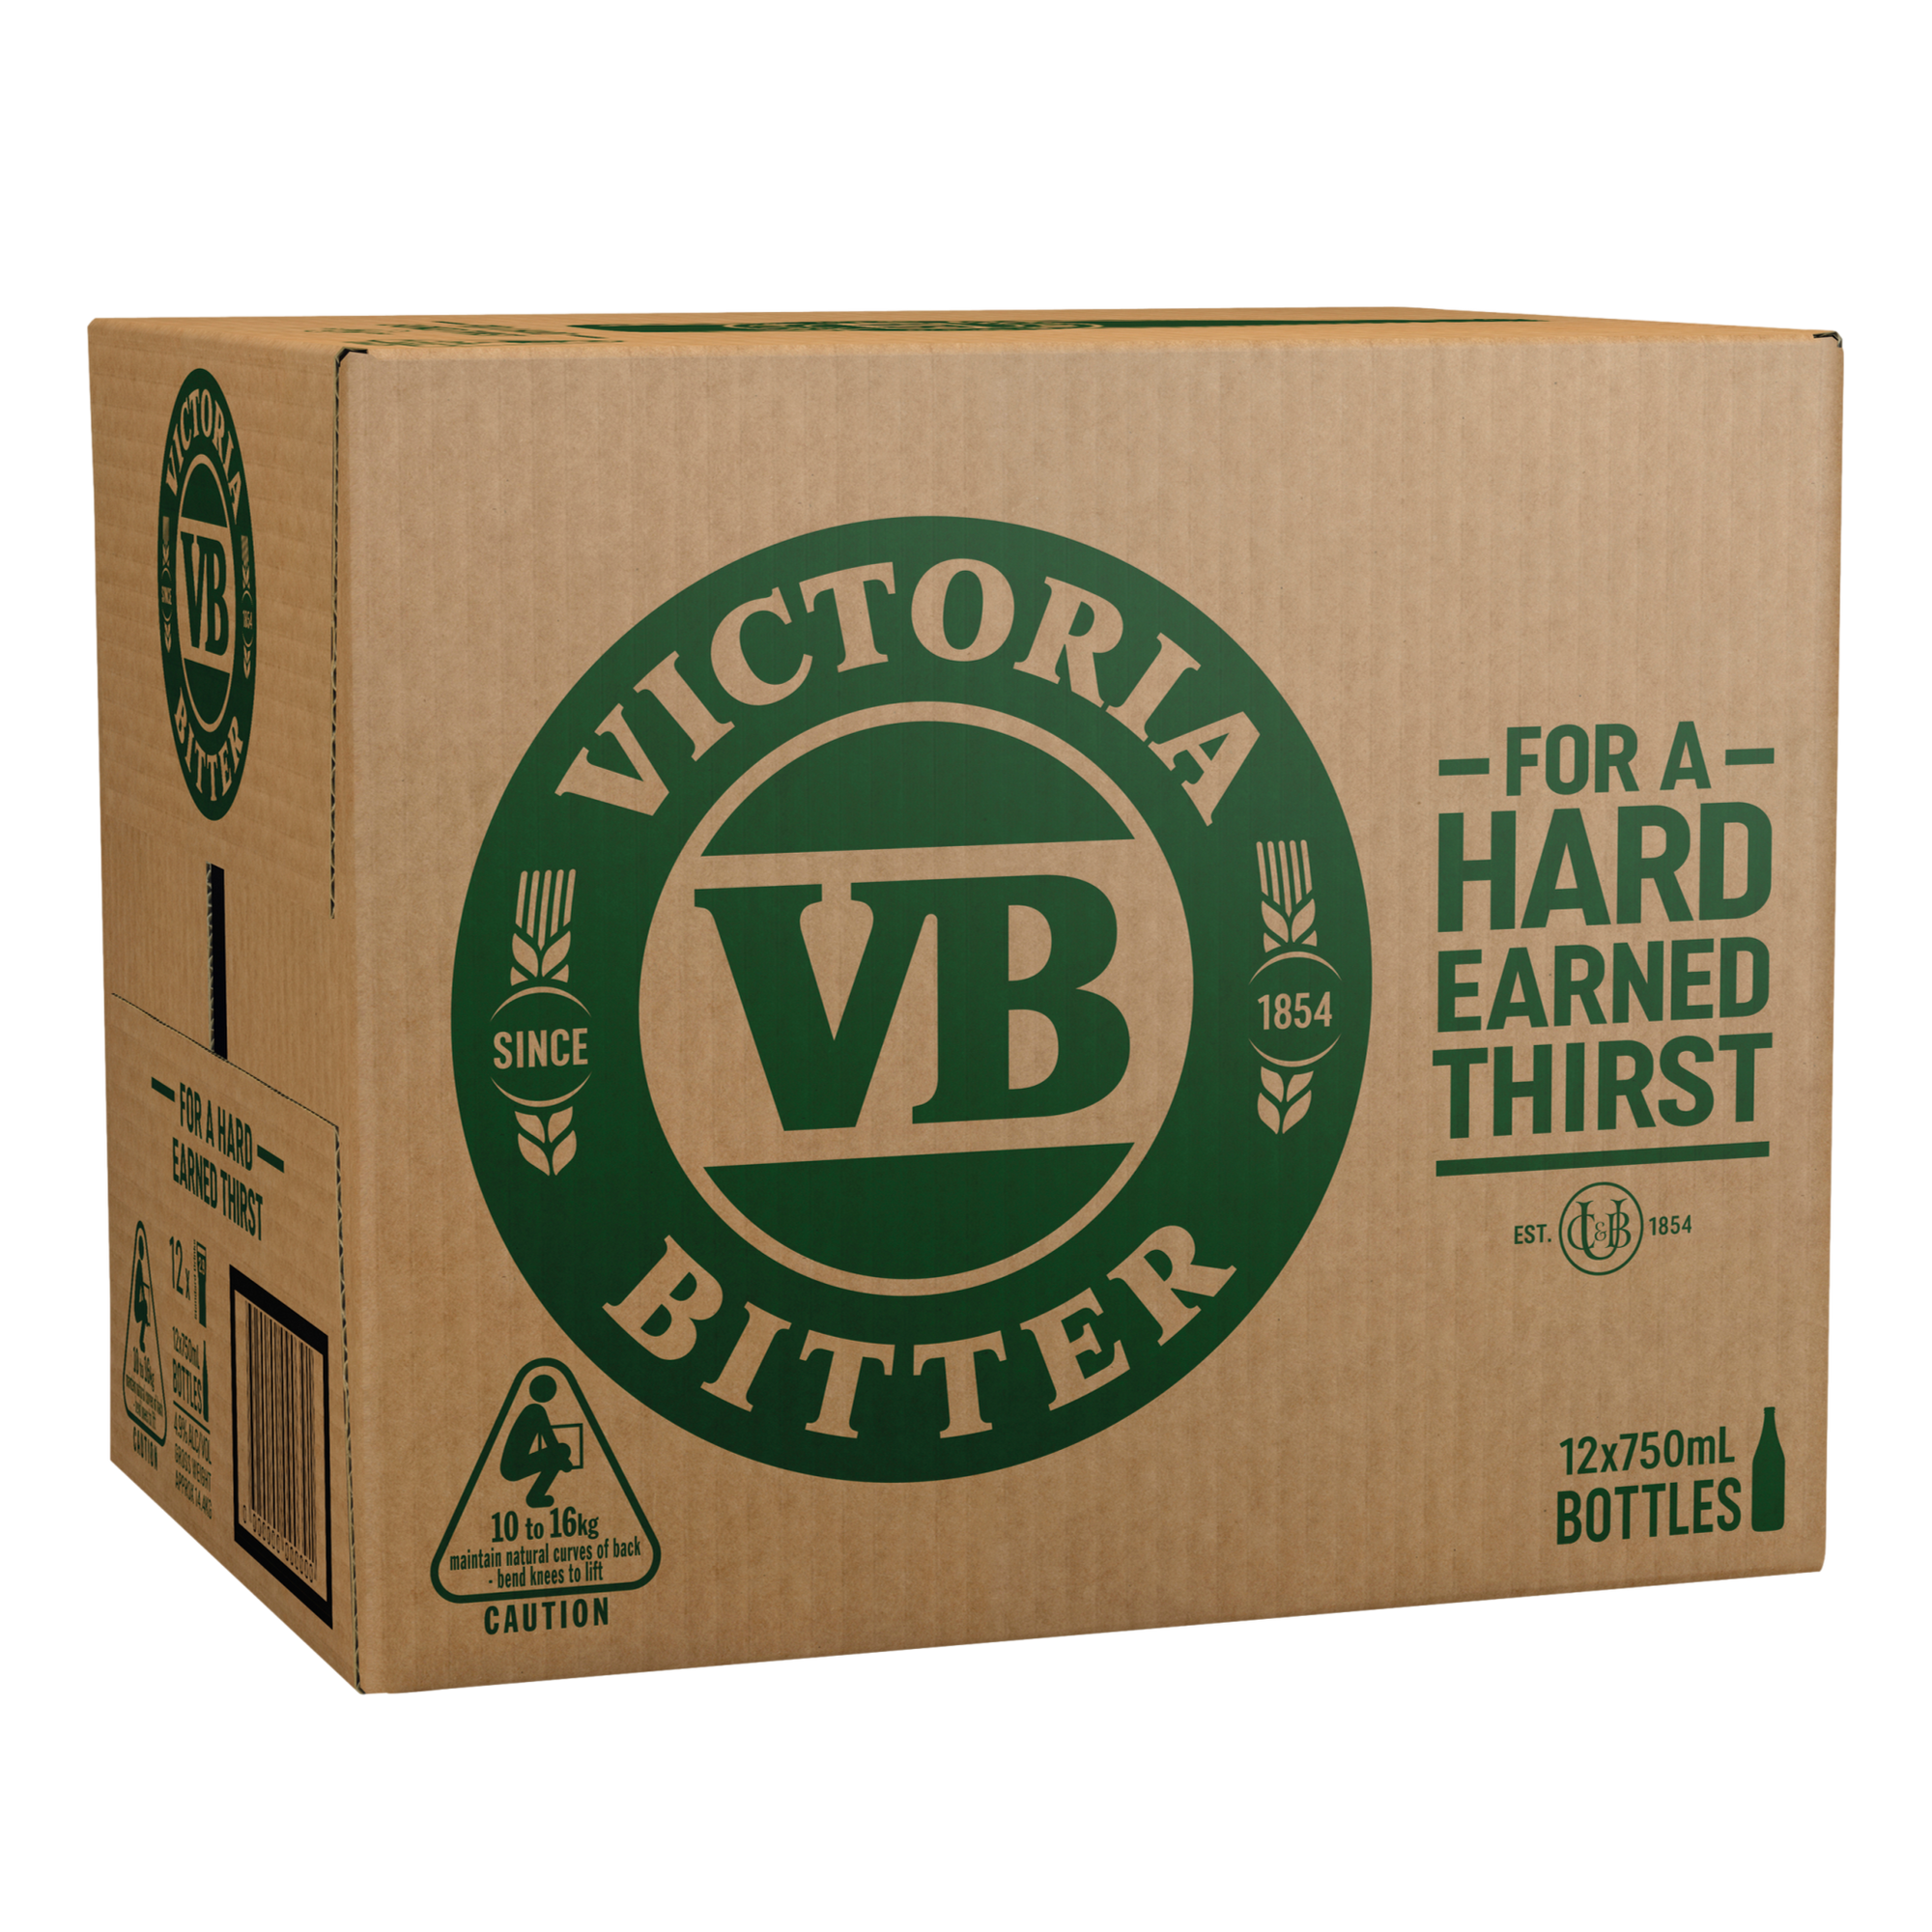 Victoria Bitter Lager 750ml Bottle Case of 12